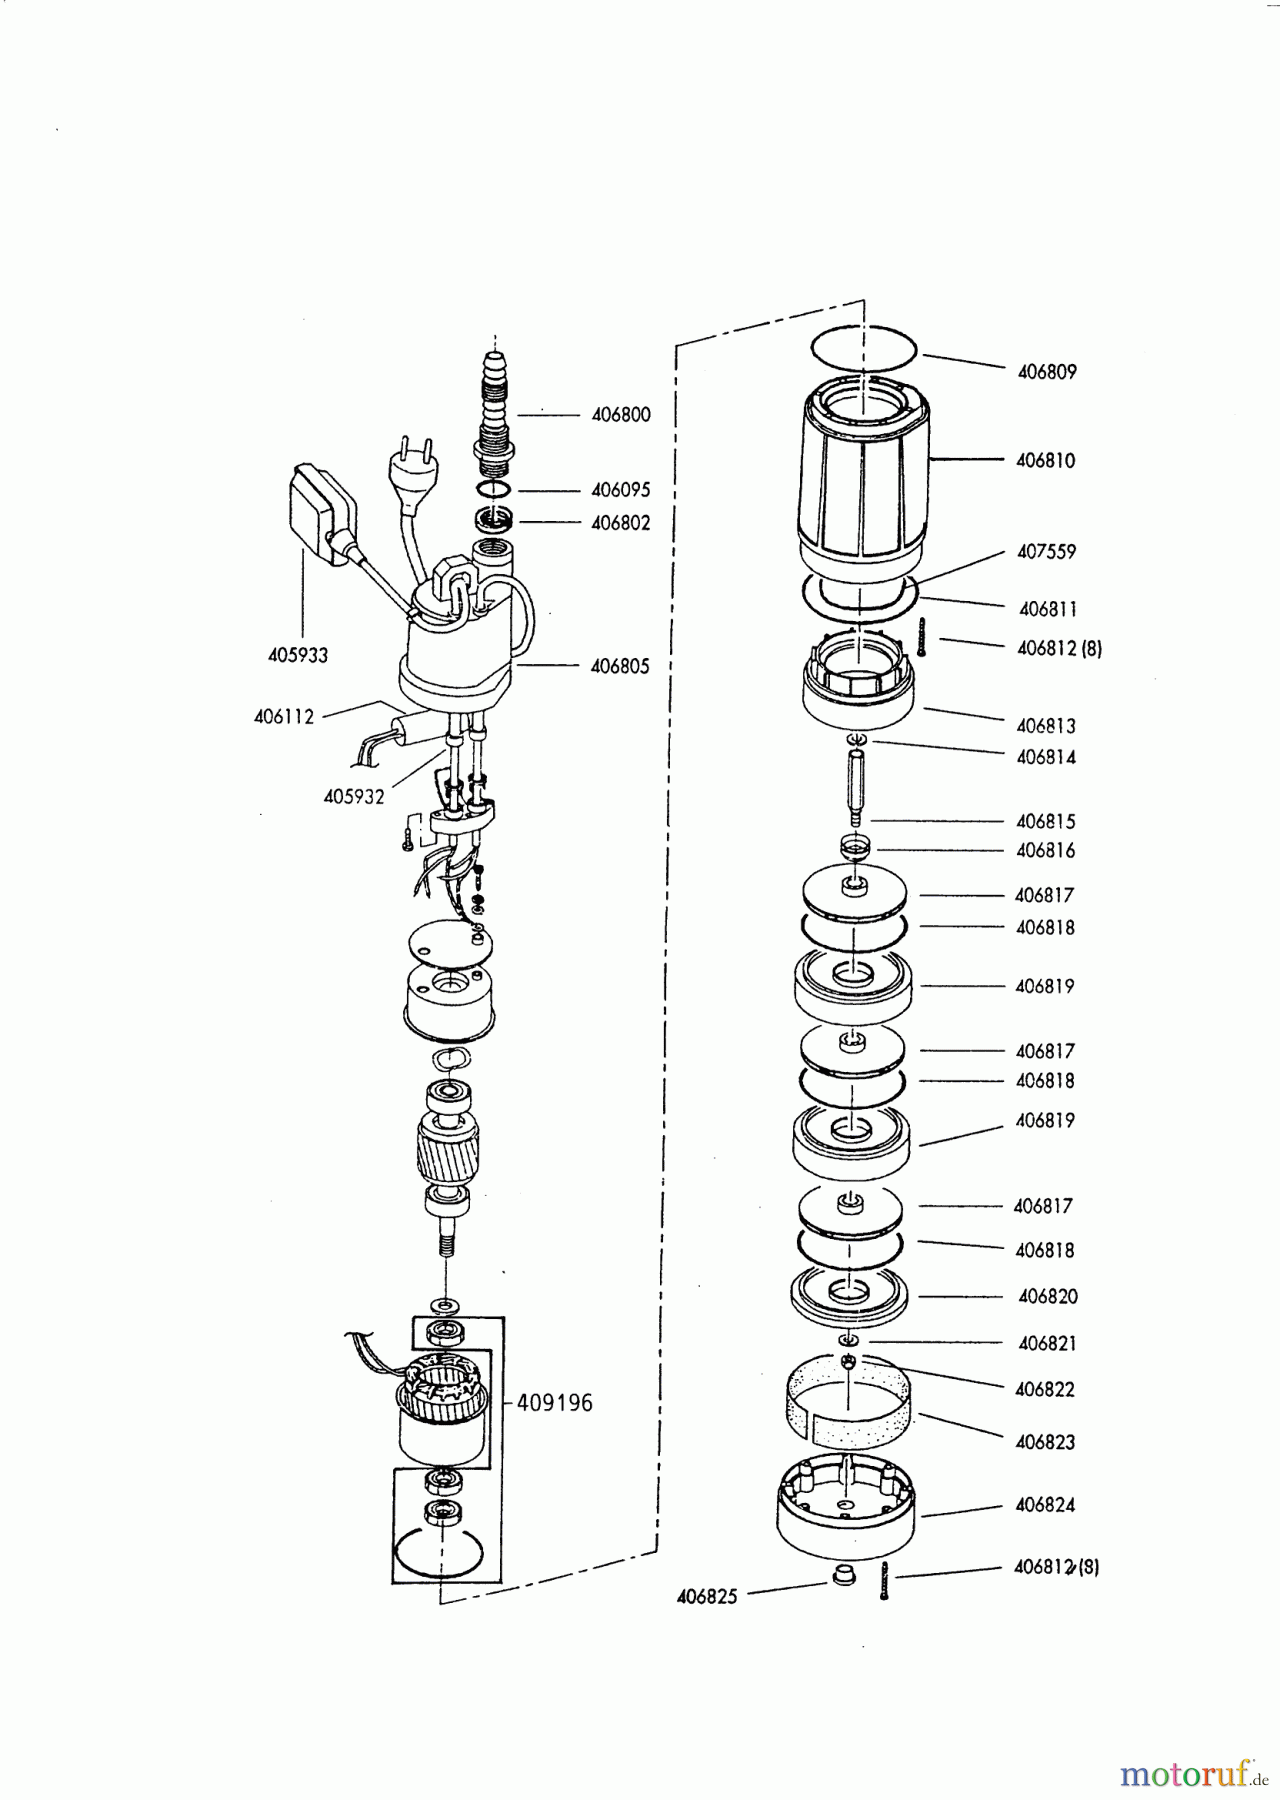  AL-KO Wassertechnik Tauchdruckpumpen TDS 1000 ab 12/1996 Seite 1